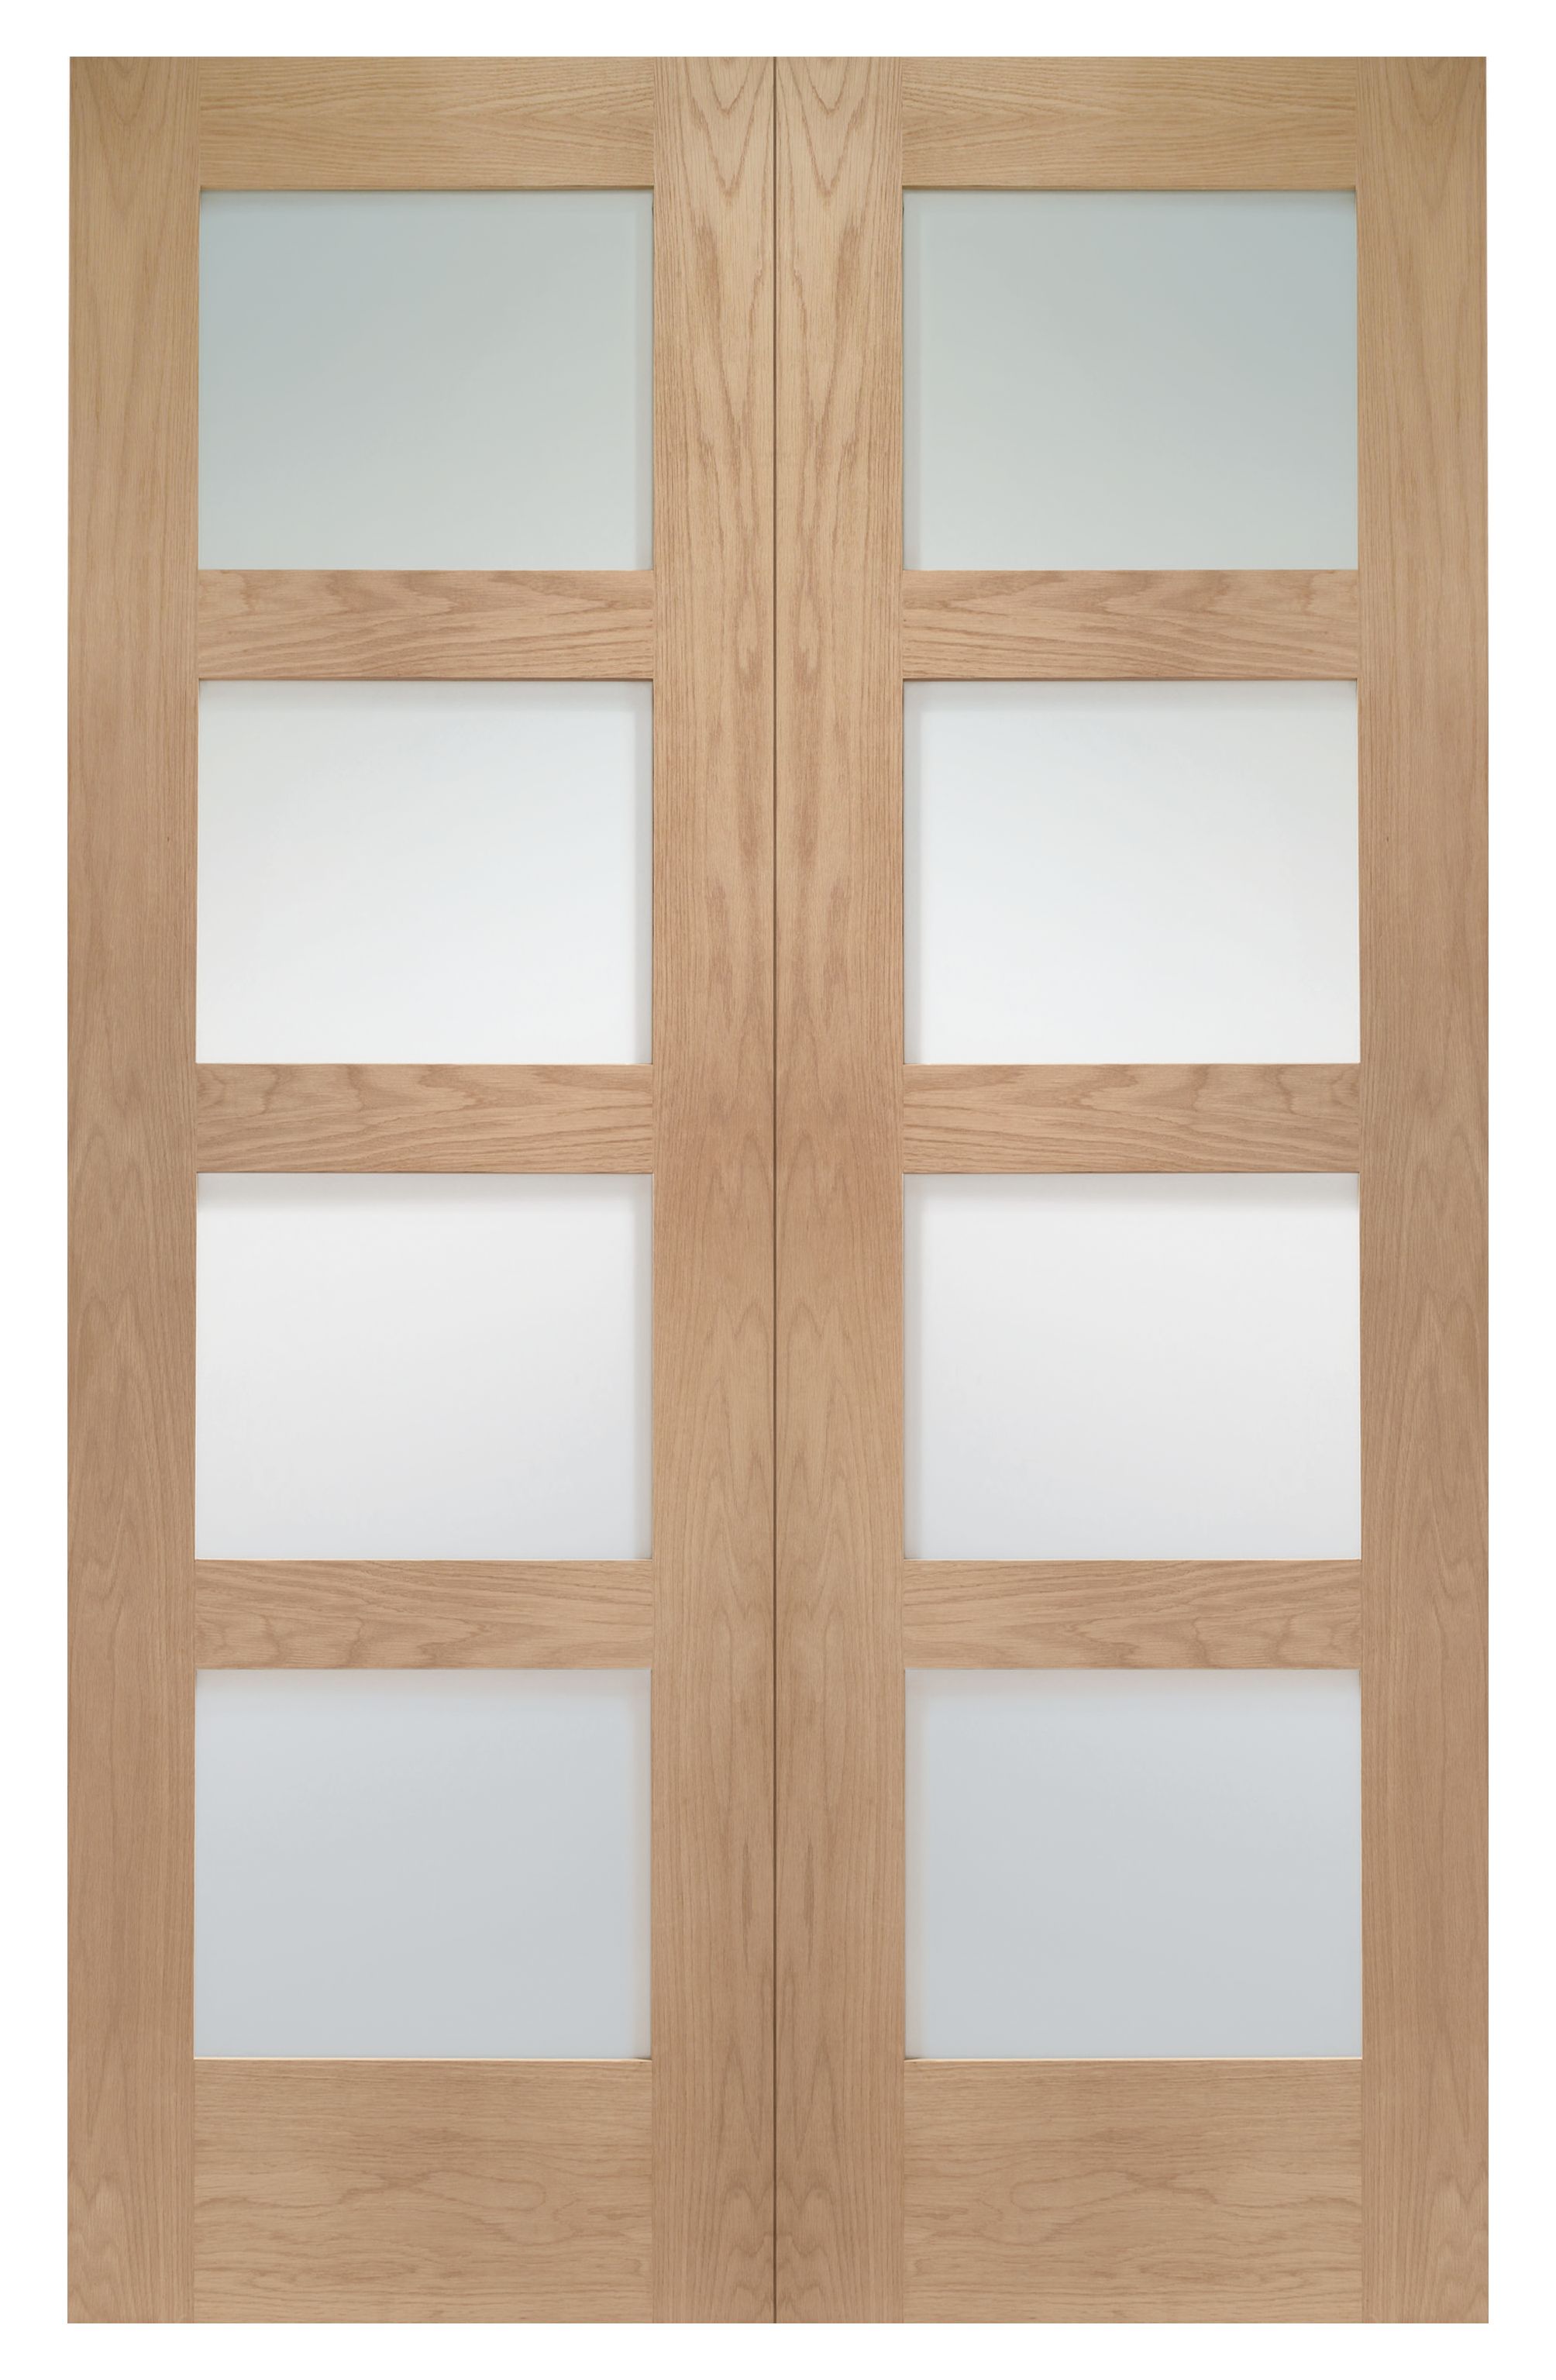 Image of Wickes Marlow Fully Glazed Oak 4 Panel Rebated Internal Door Pair - 1981 x 1168mm